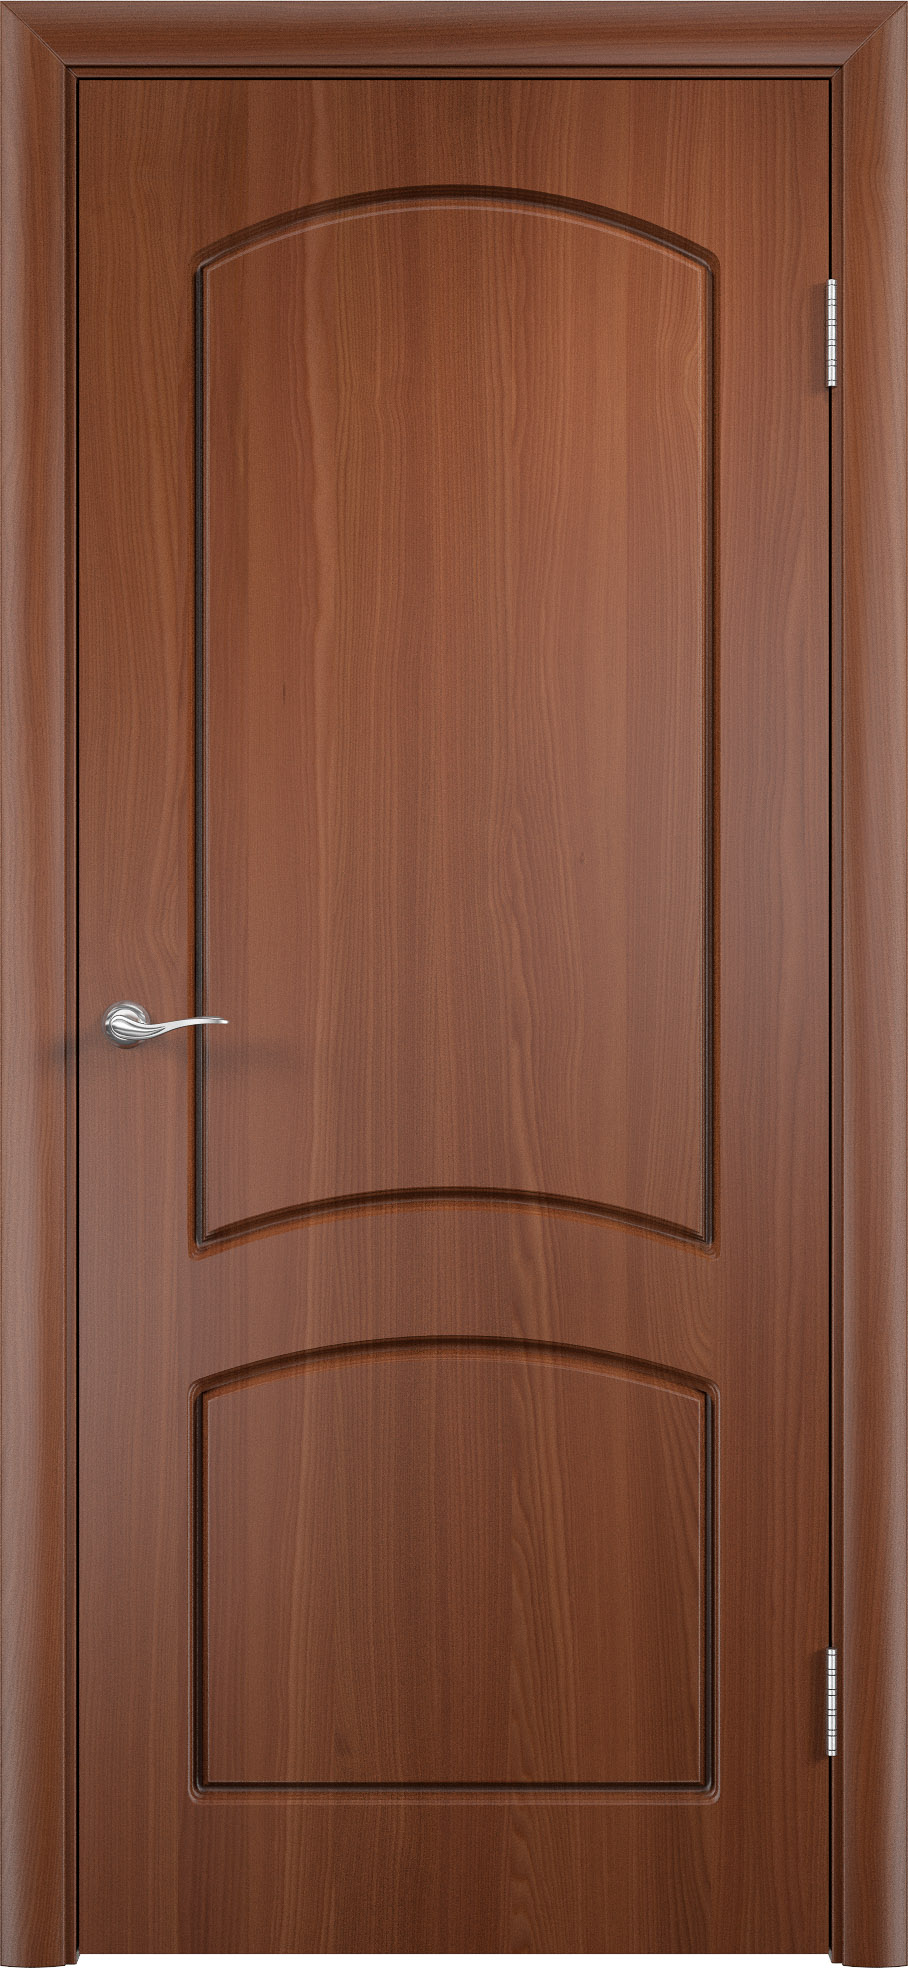 Двери уфа купить недорого. Полотно дверное Verda ПГ 700 Миланский орех лам.. Дверное полотно гладкое дг600 орех Миланский (ВДК). Дверь Альфа ДГ Миланский орех. Двери межкомнатные Лотос Миланский орех.